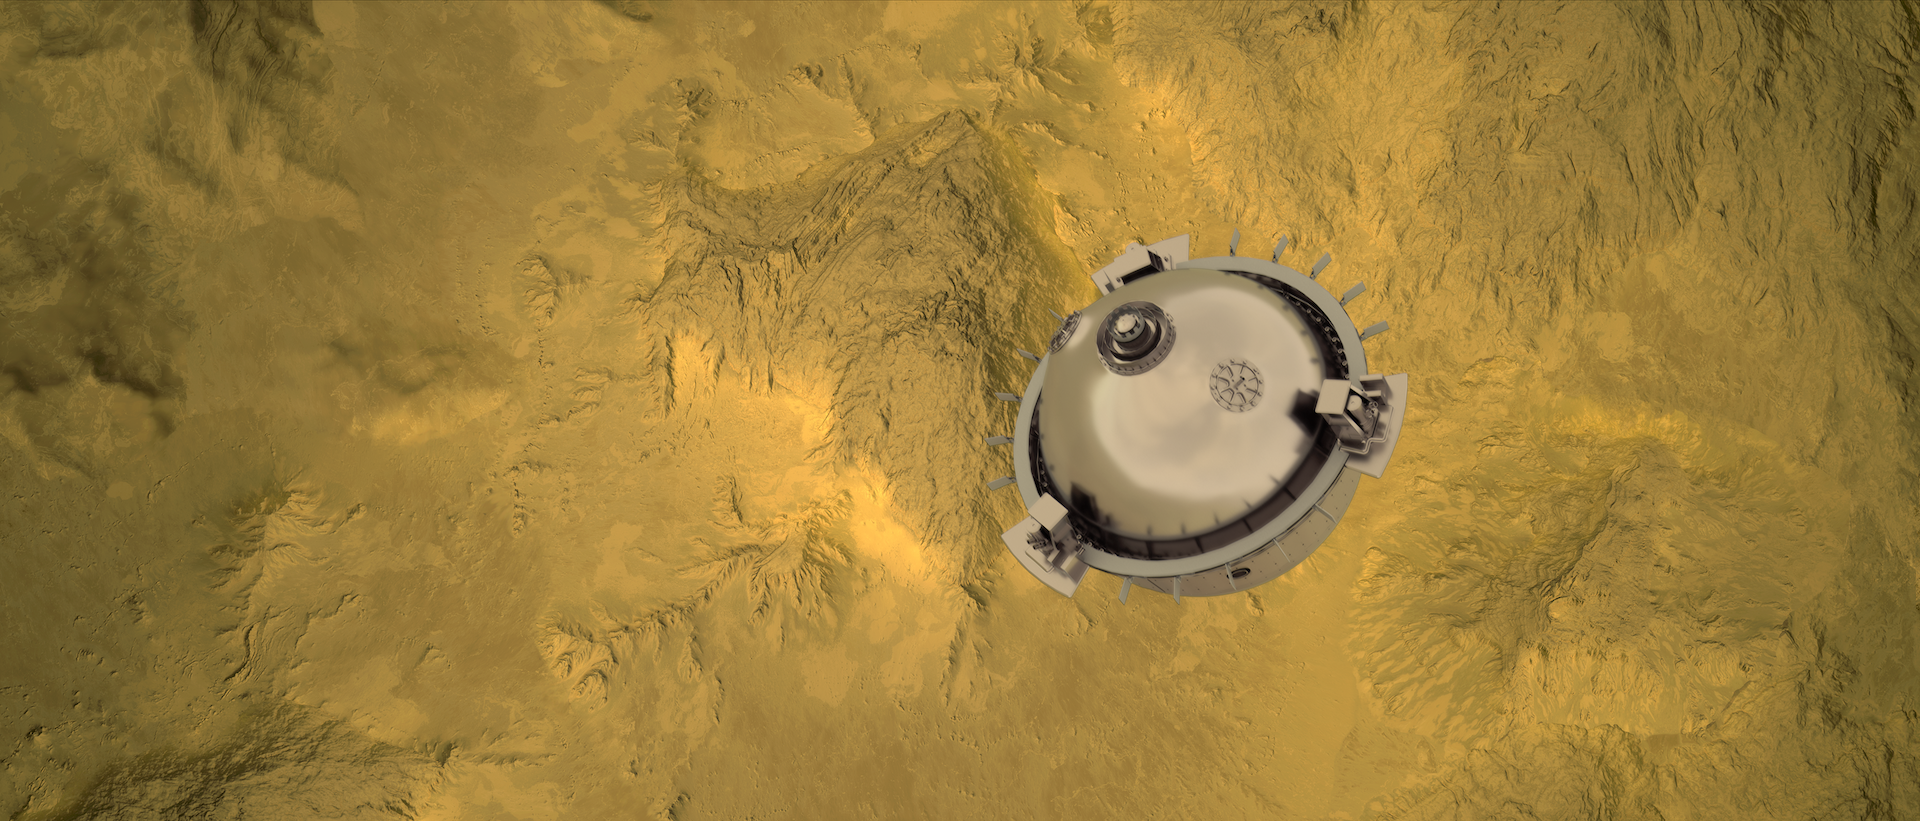 Estas son las nuevas misiones de la NASA a Venus